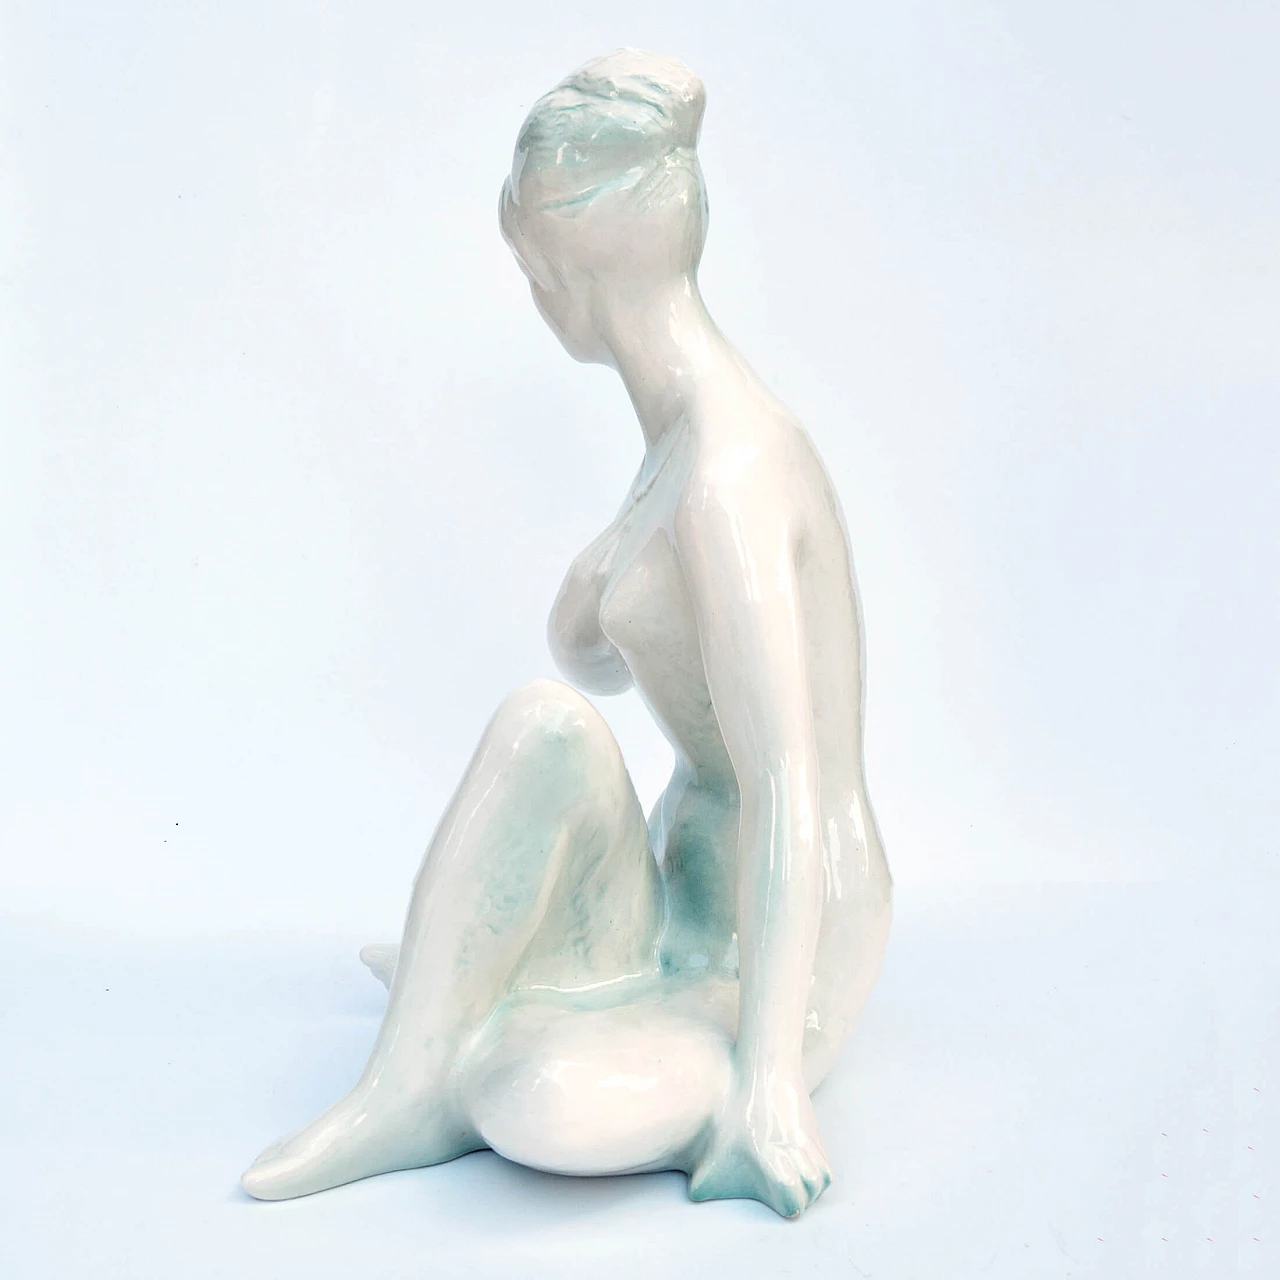 Female nude sculpture by Kokrda Jihokera Bechyně, 1960s 9